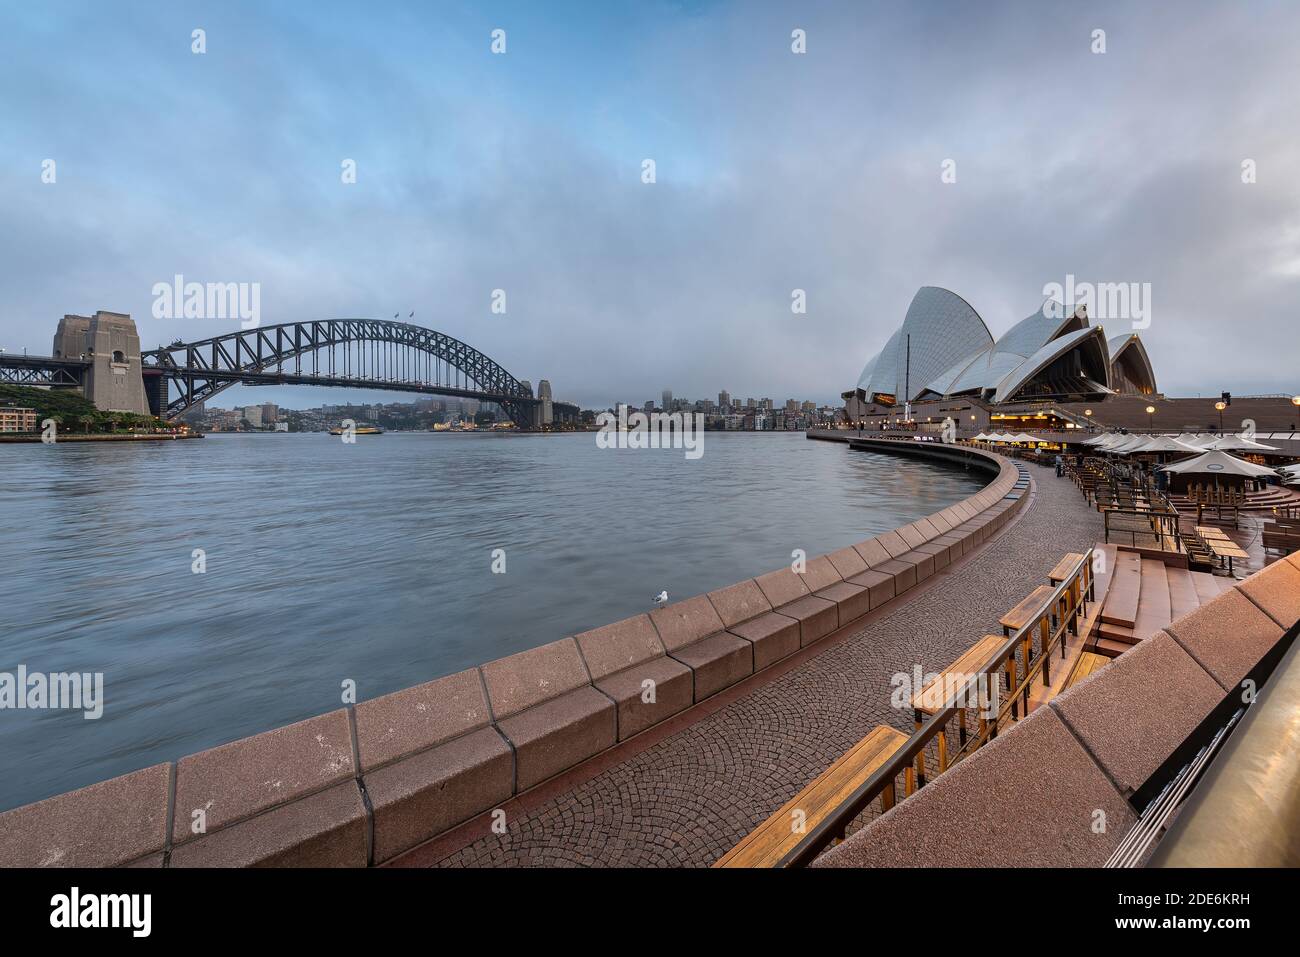 Sydney, Australie - tôt le matin à l'Opéra de Sydney. Le Harbour Bridge est visible en arrière-plan. Banque D'Images